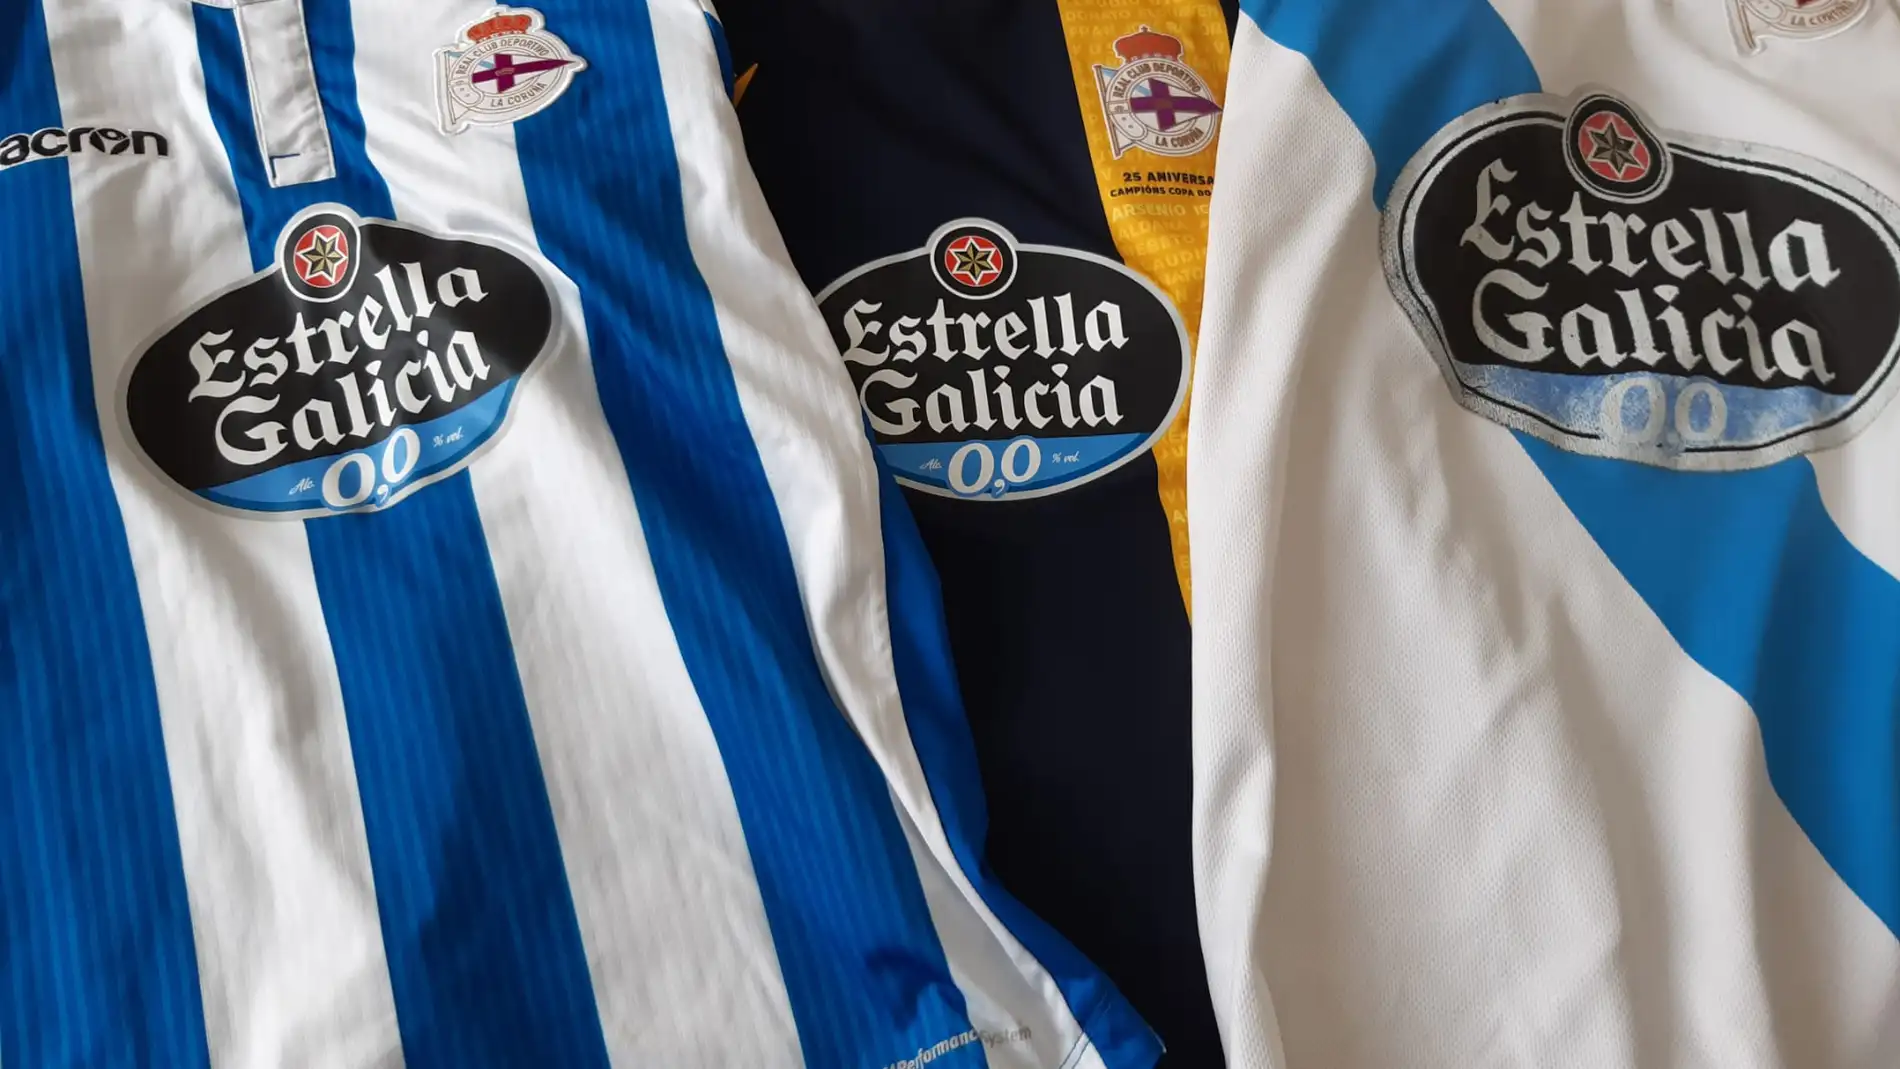 Estrella Galicia, patrocinador principal del Deportivo